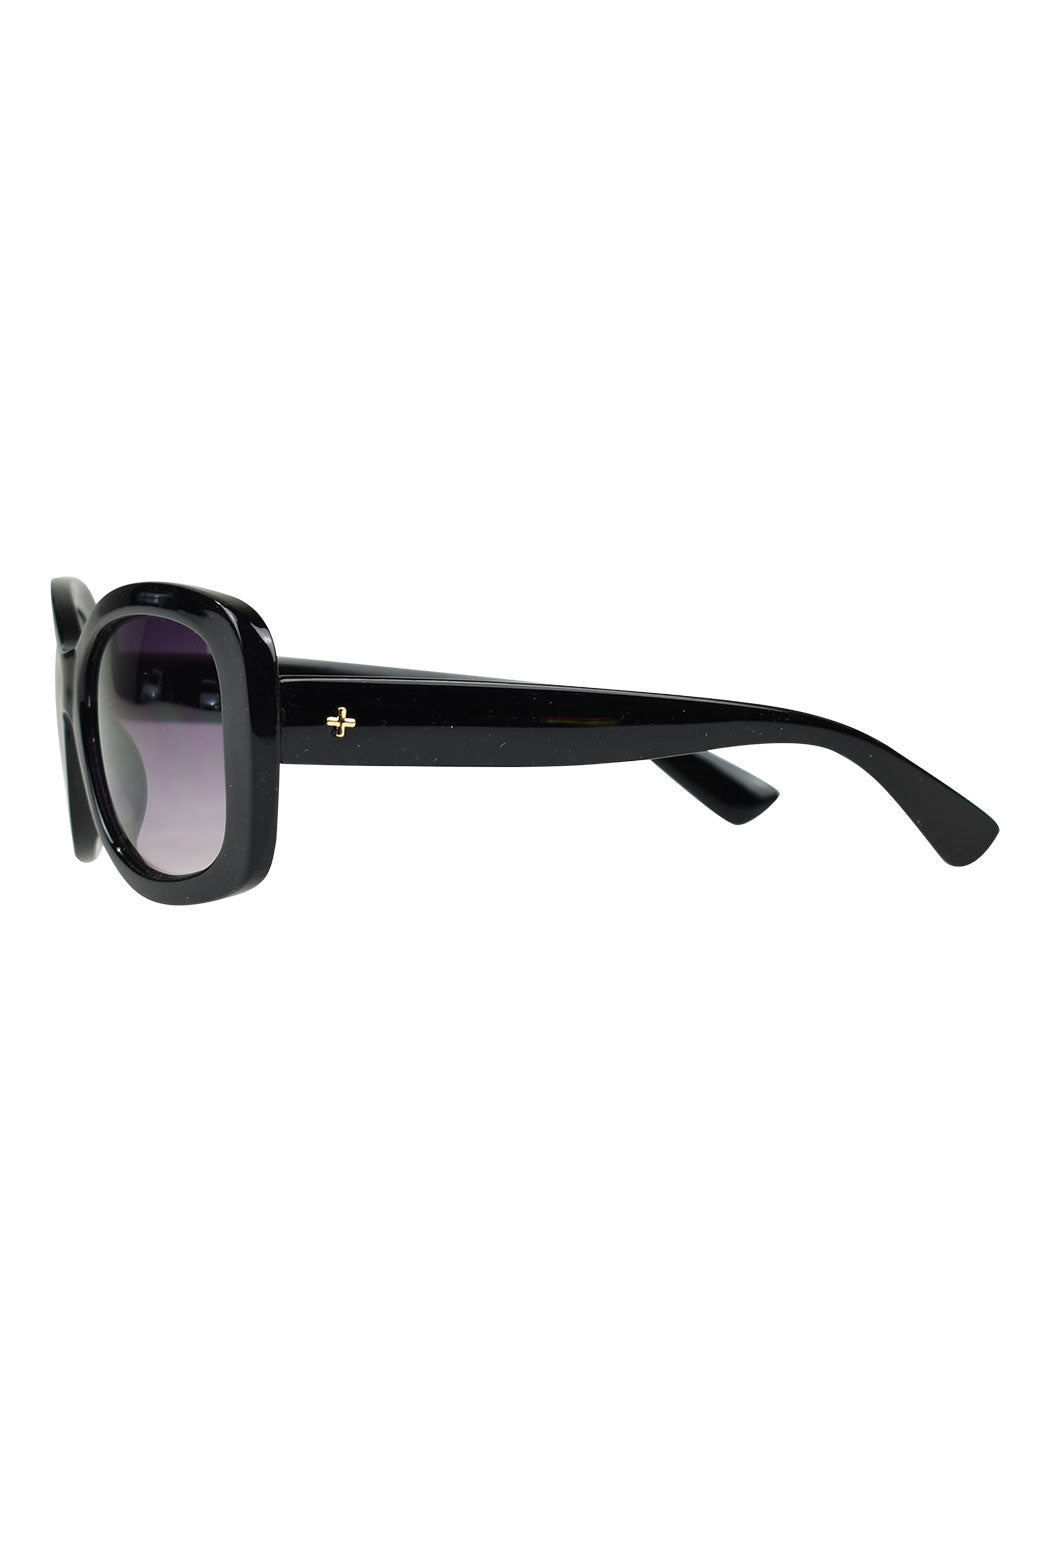 Peta + Jain Tiffany Black Sunglasses